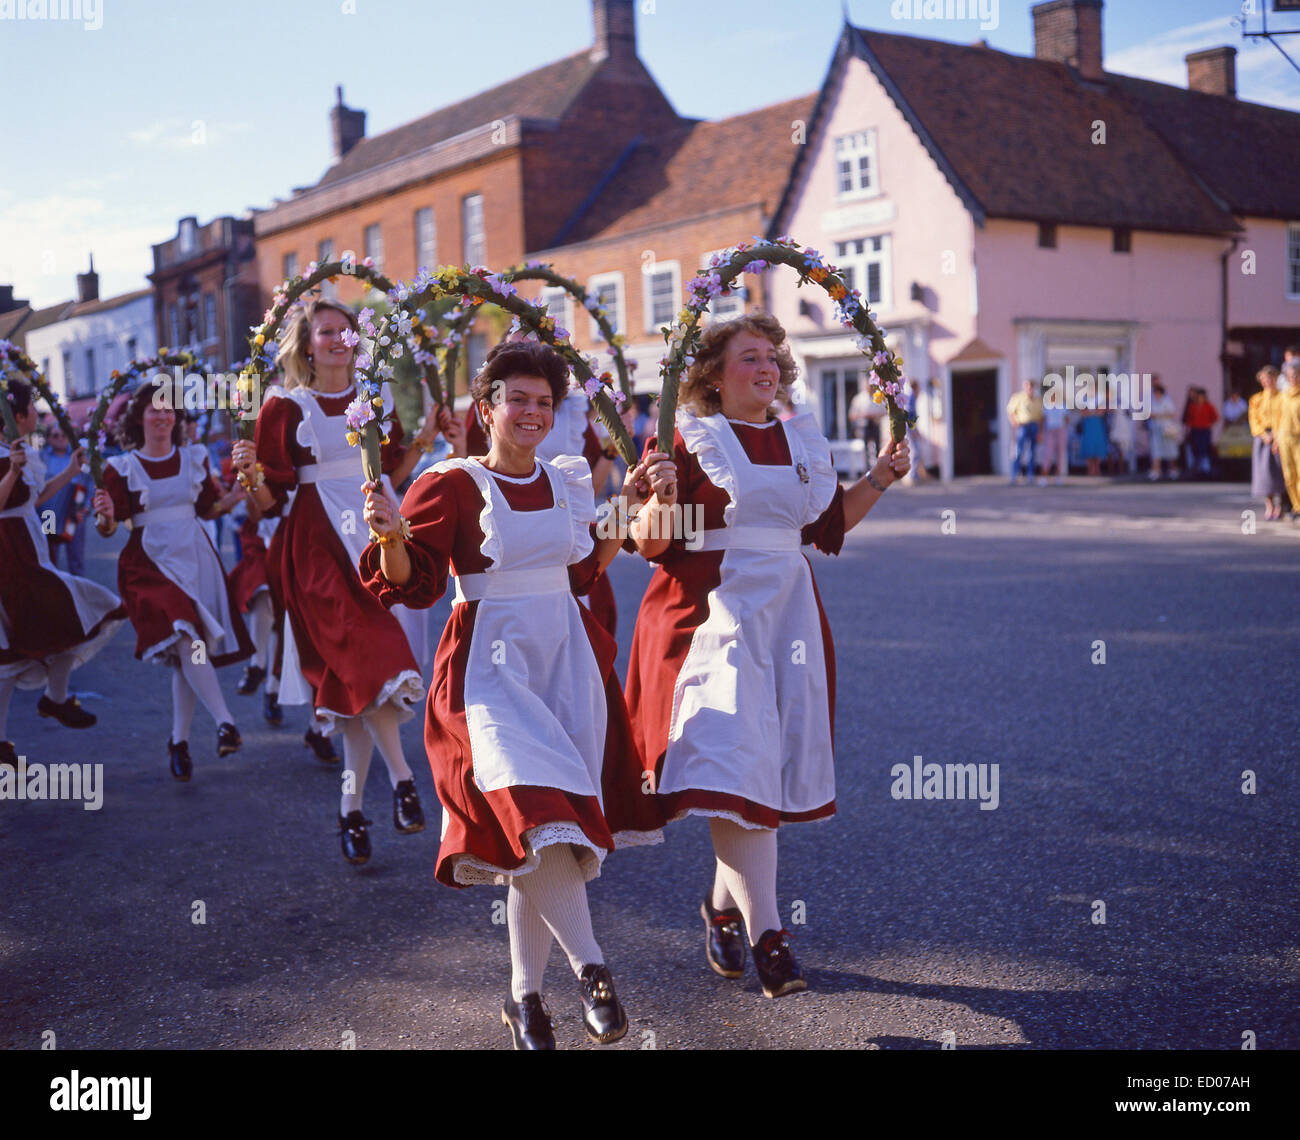 Les jeunes femmes country dancing, Dedham, Essex, Angleterre, Royaume-Uni Banque D'Images